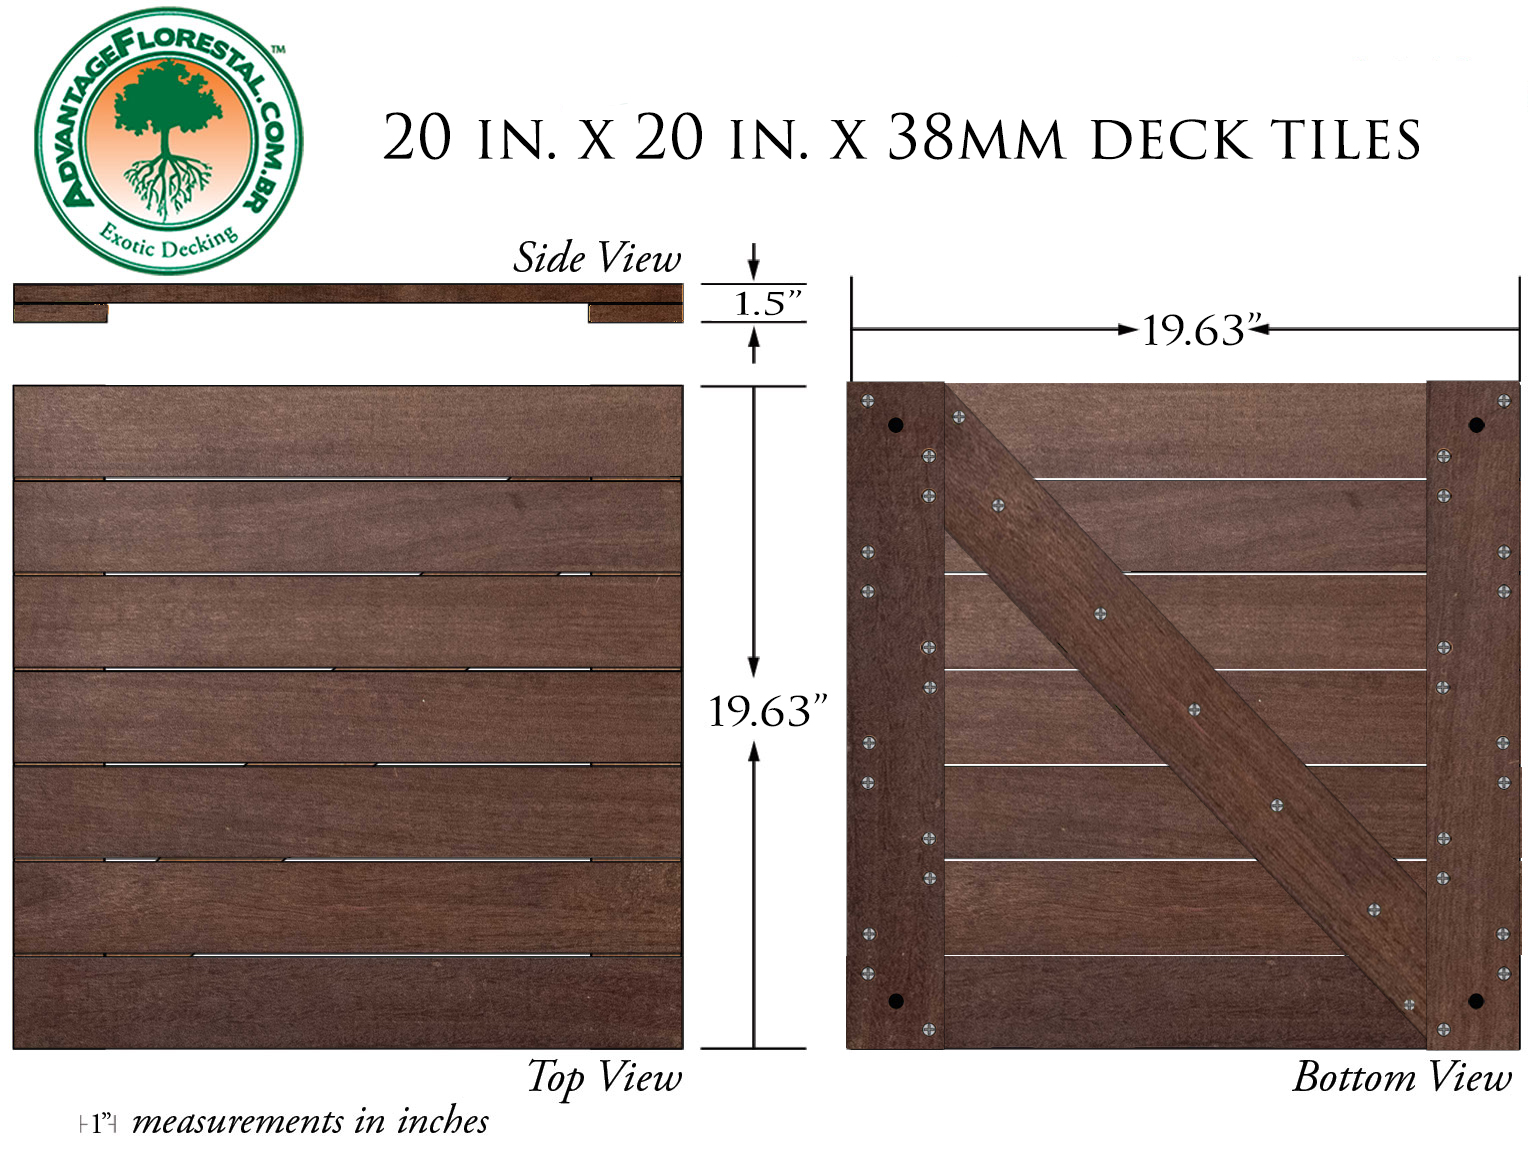 IPE Deck Tile 20 in. x 20 in. x 38mm